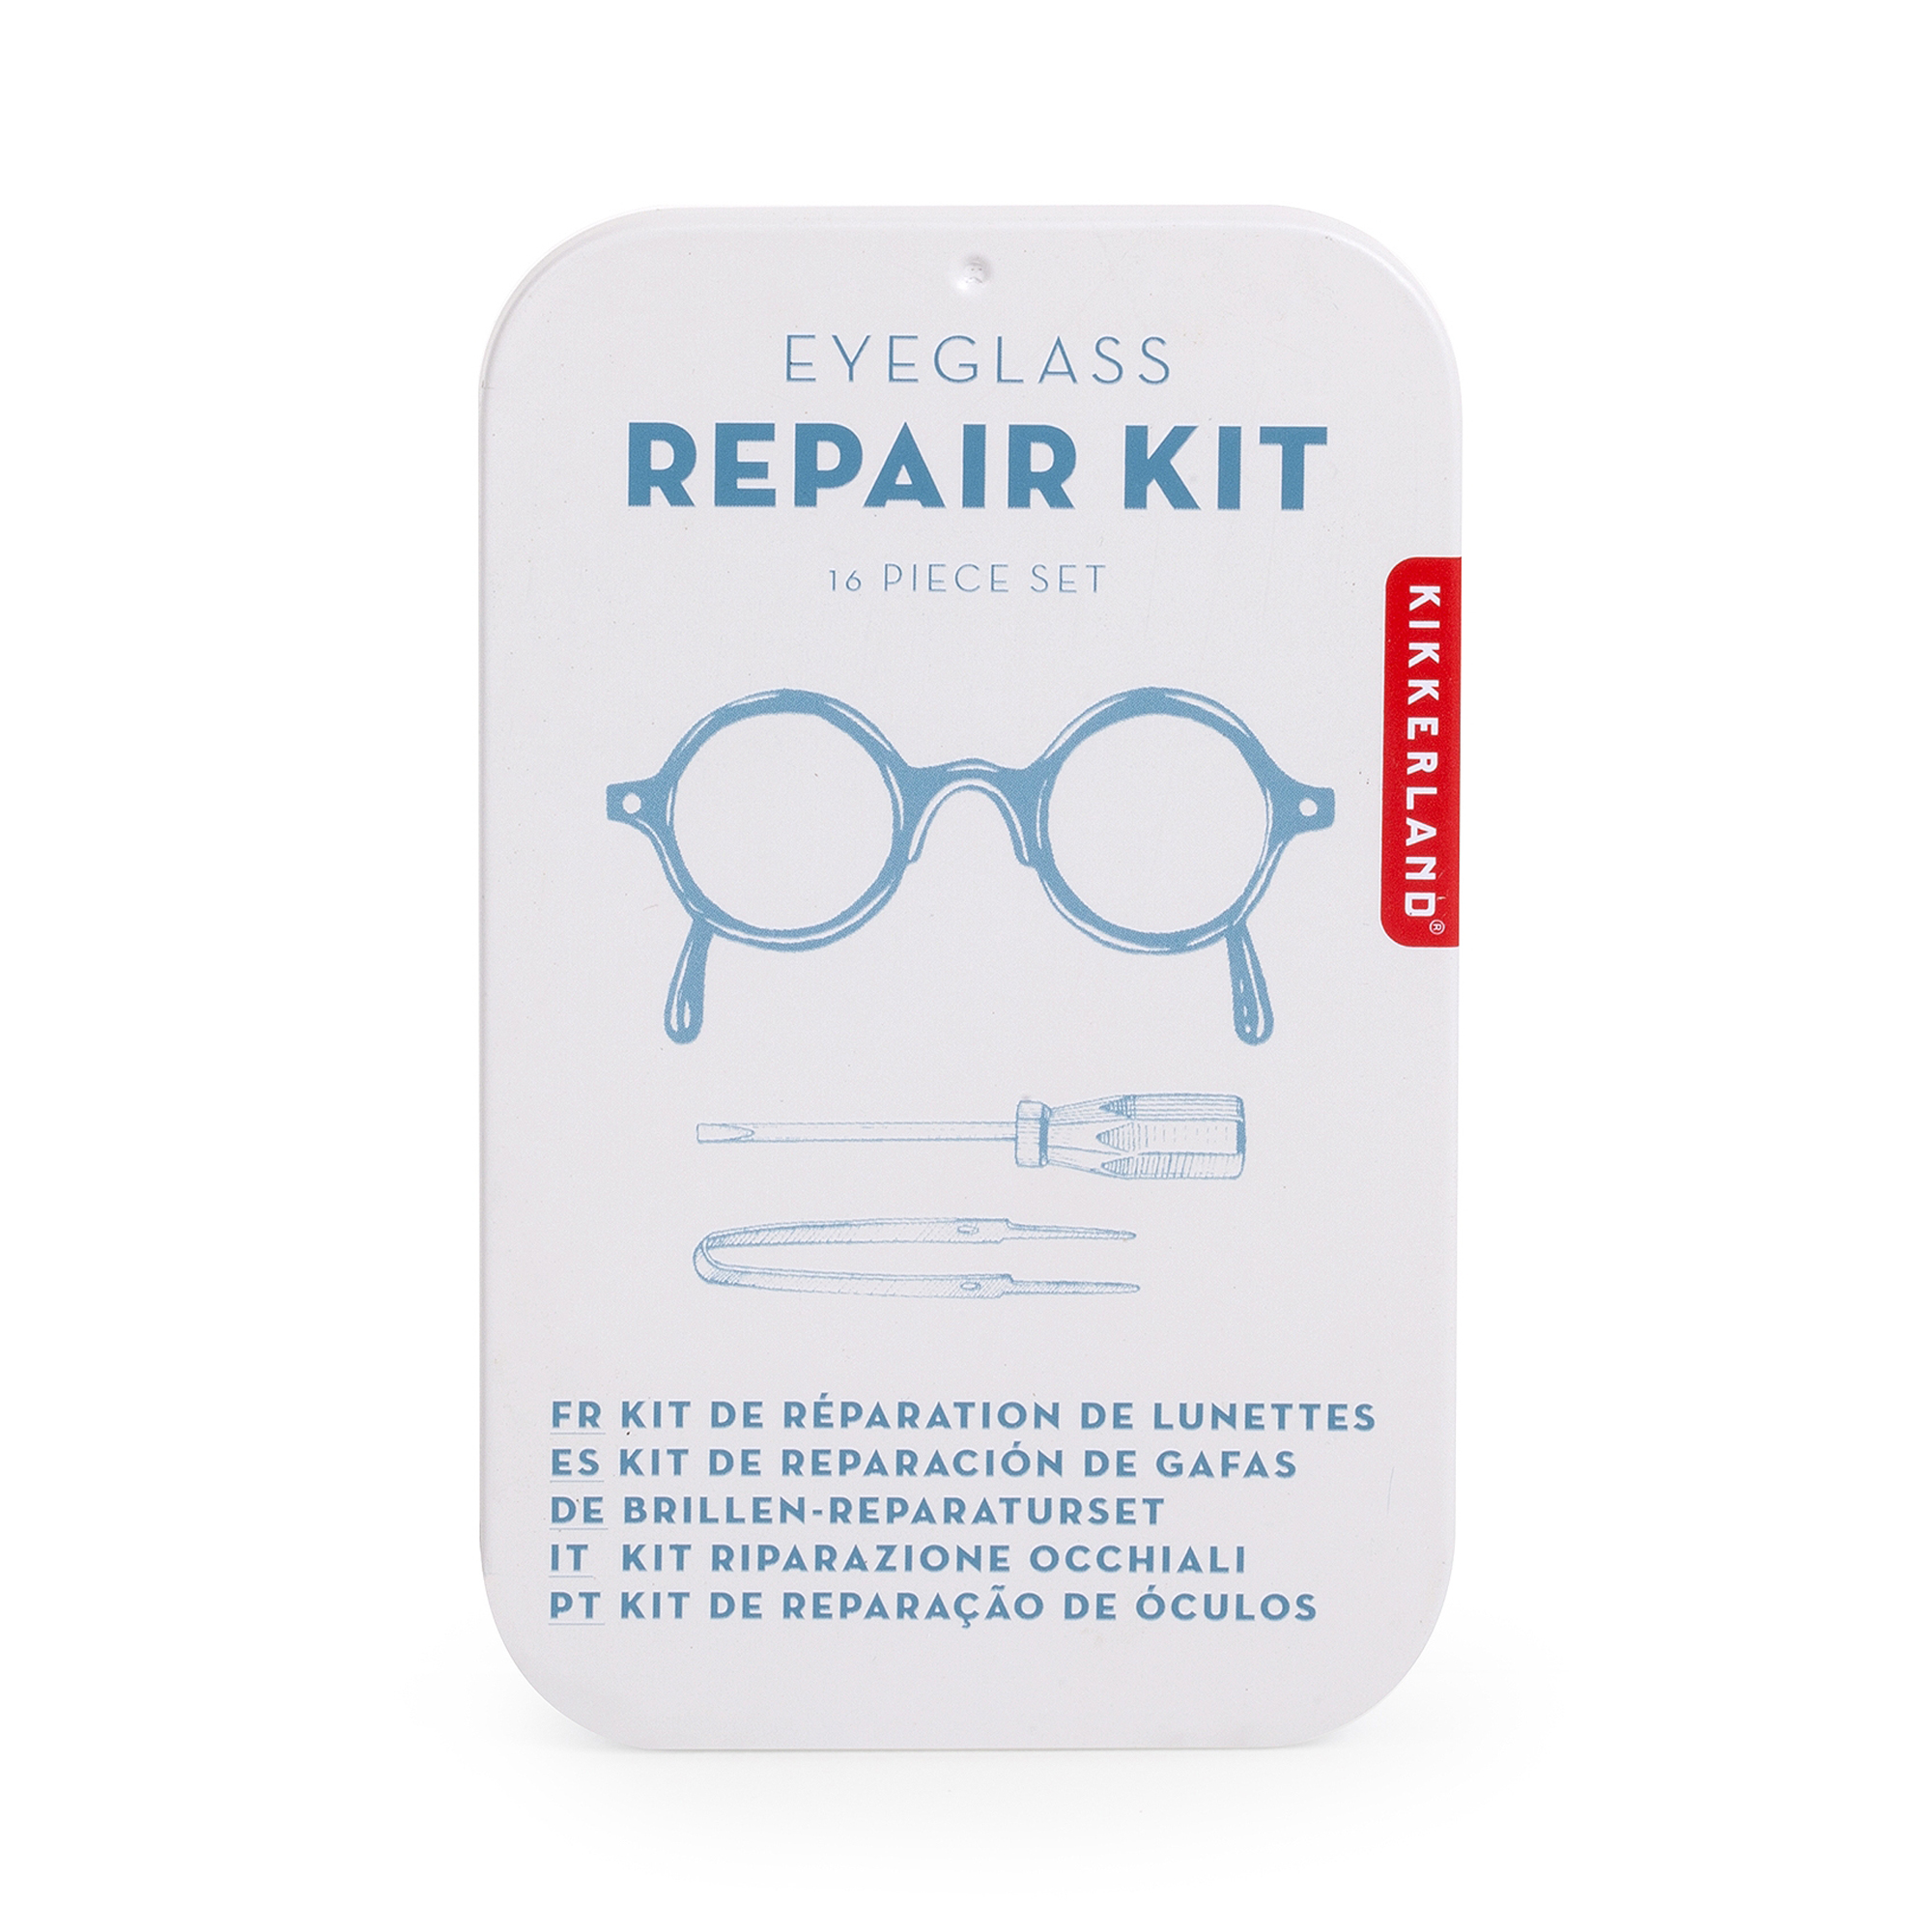 Eyeglass Repair Kitproduktzoombild #1